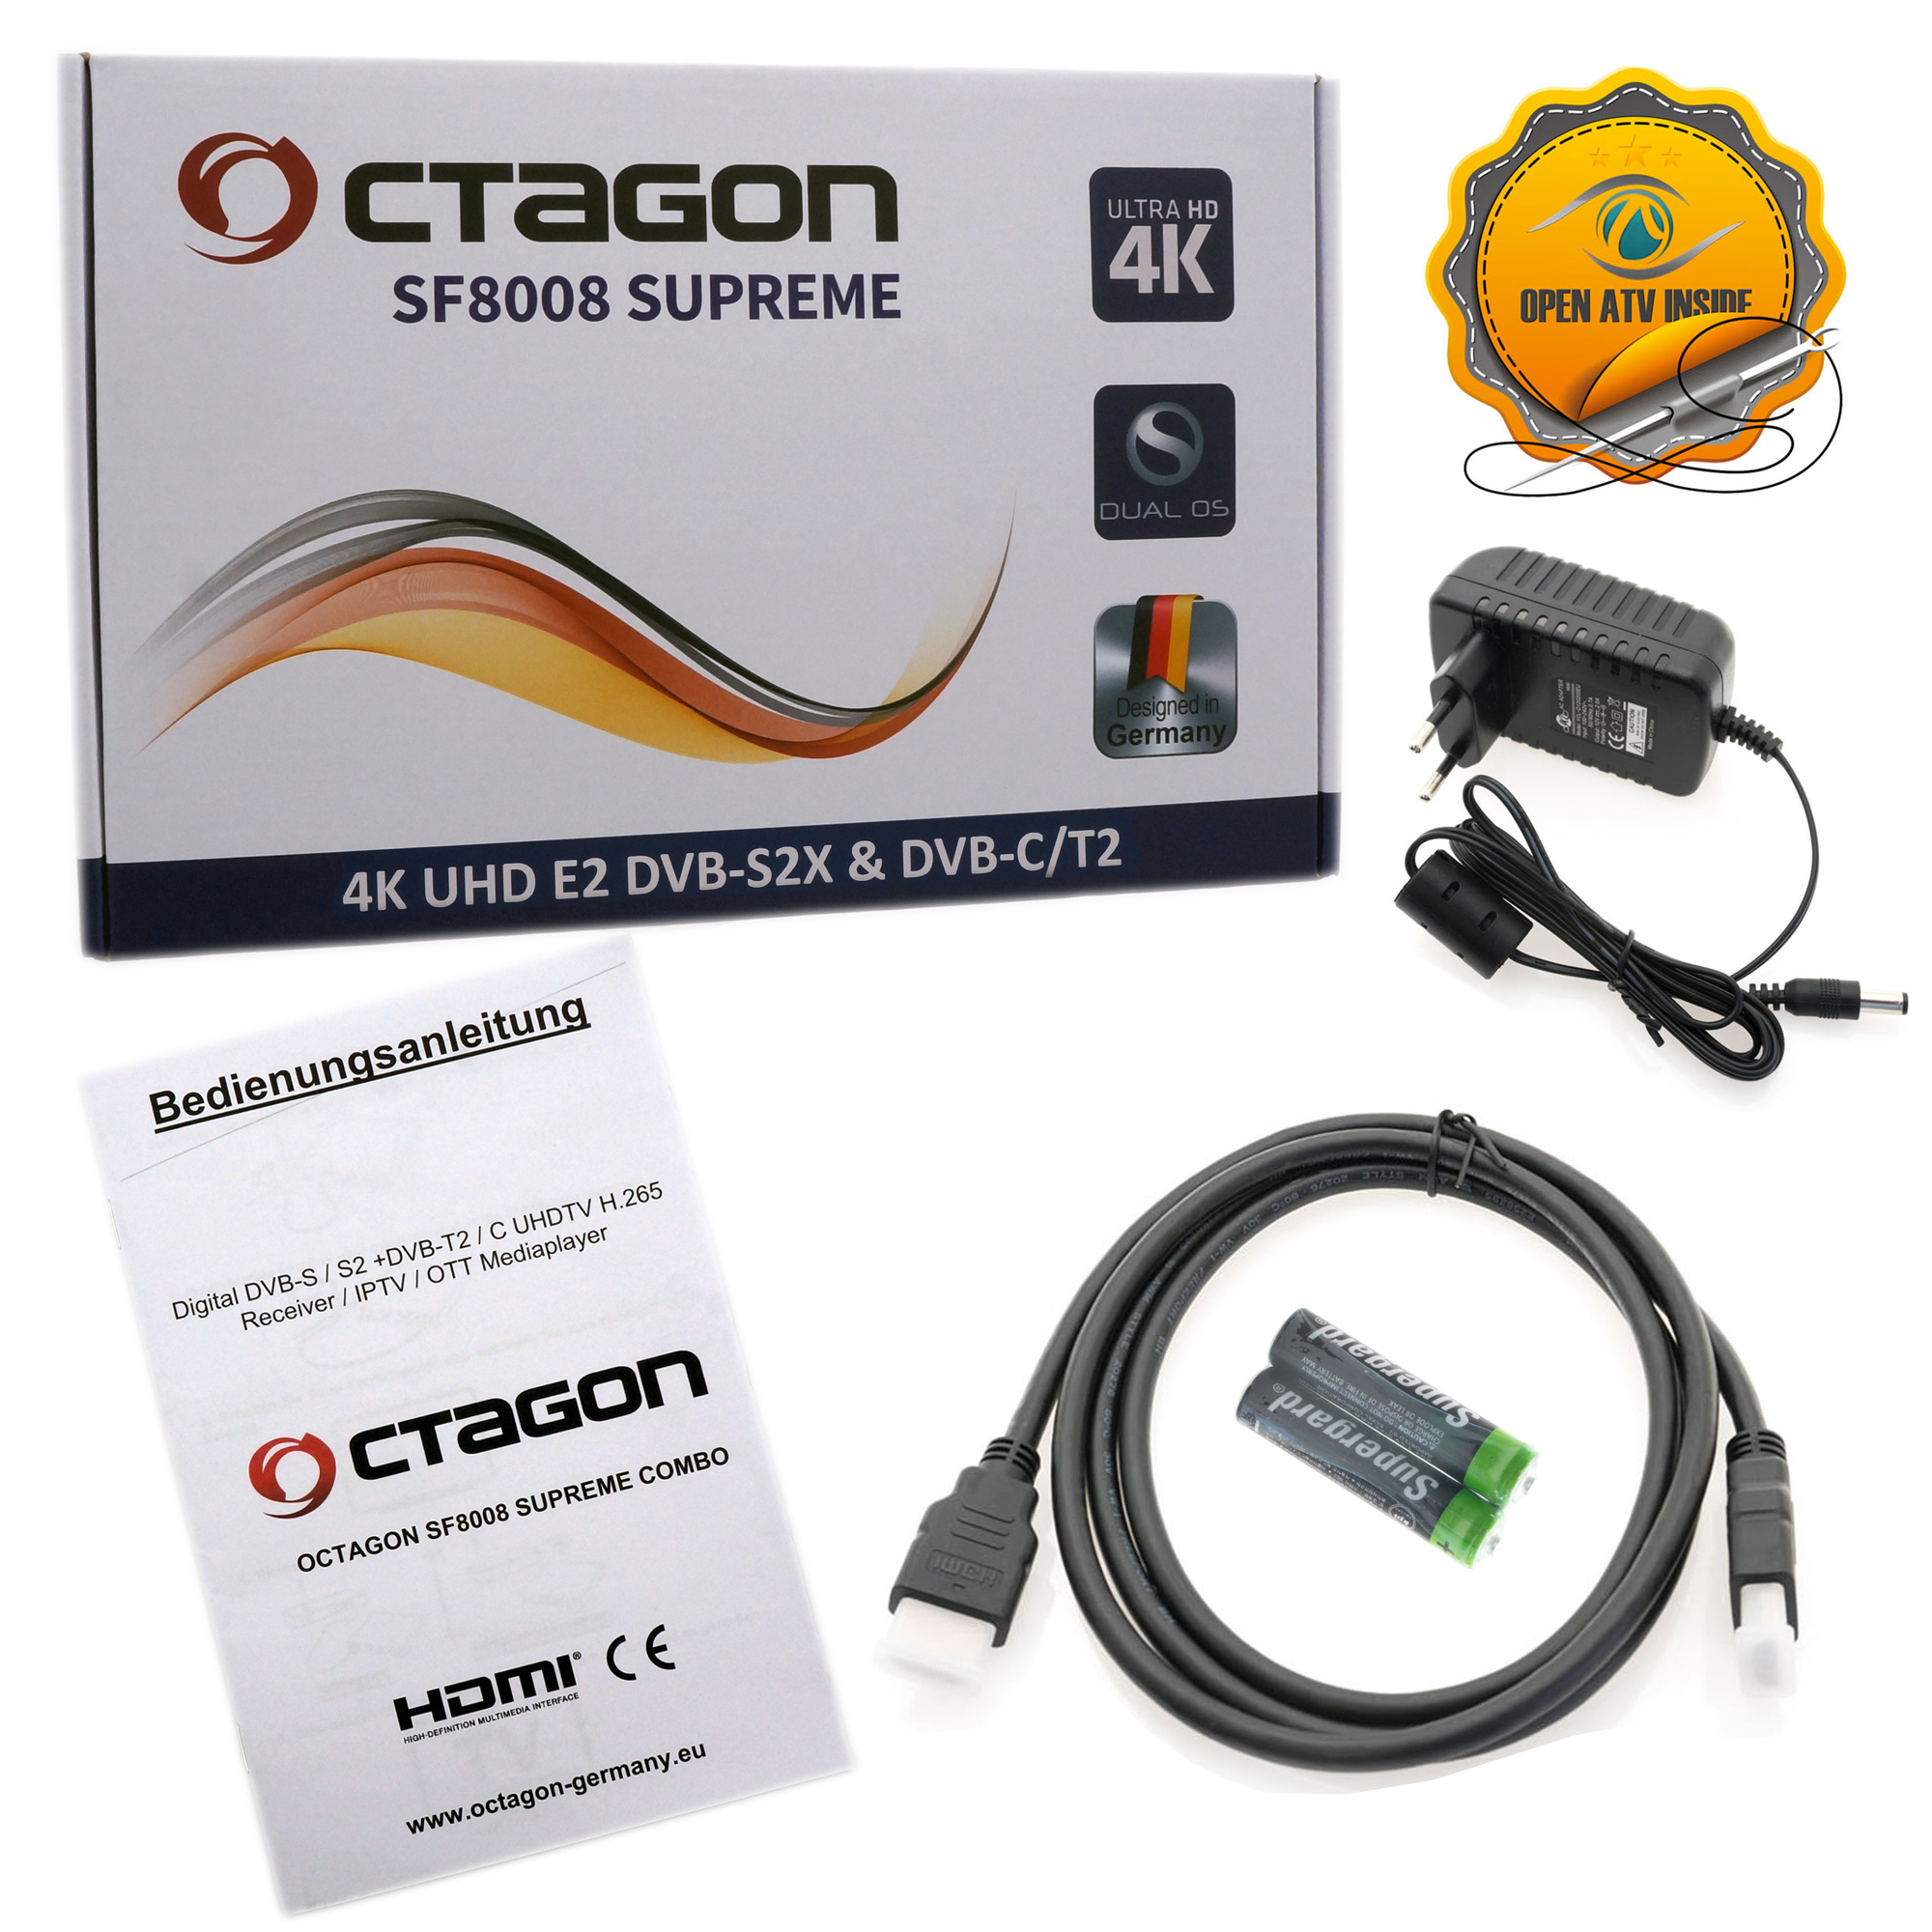 OCTAGON SF8008 4K SUPREME Schwarz) + SSD Receiver 4K Combo Tuner, UHD M.2 Sat DVB-C/T2 & E2 (Twin DVB-S2X 1TB UHD PVR Receiver